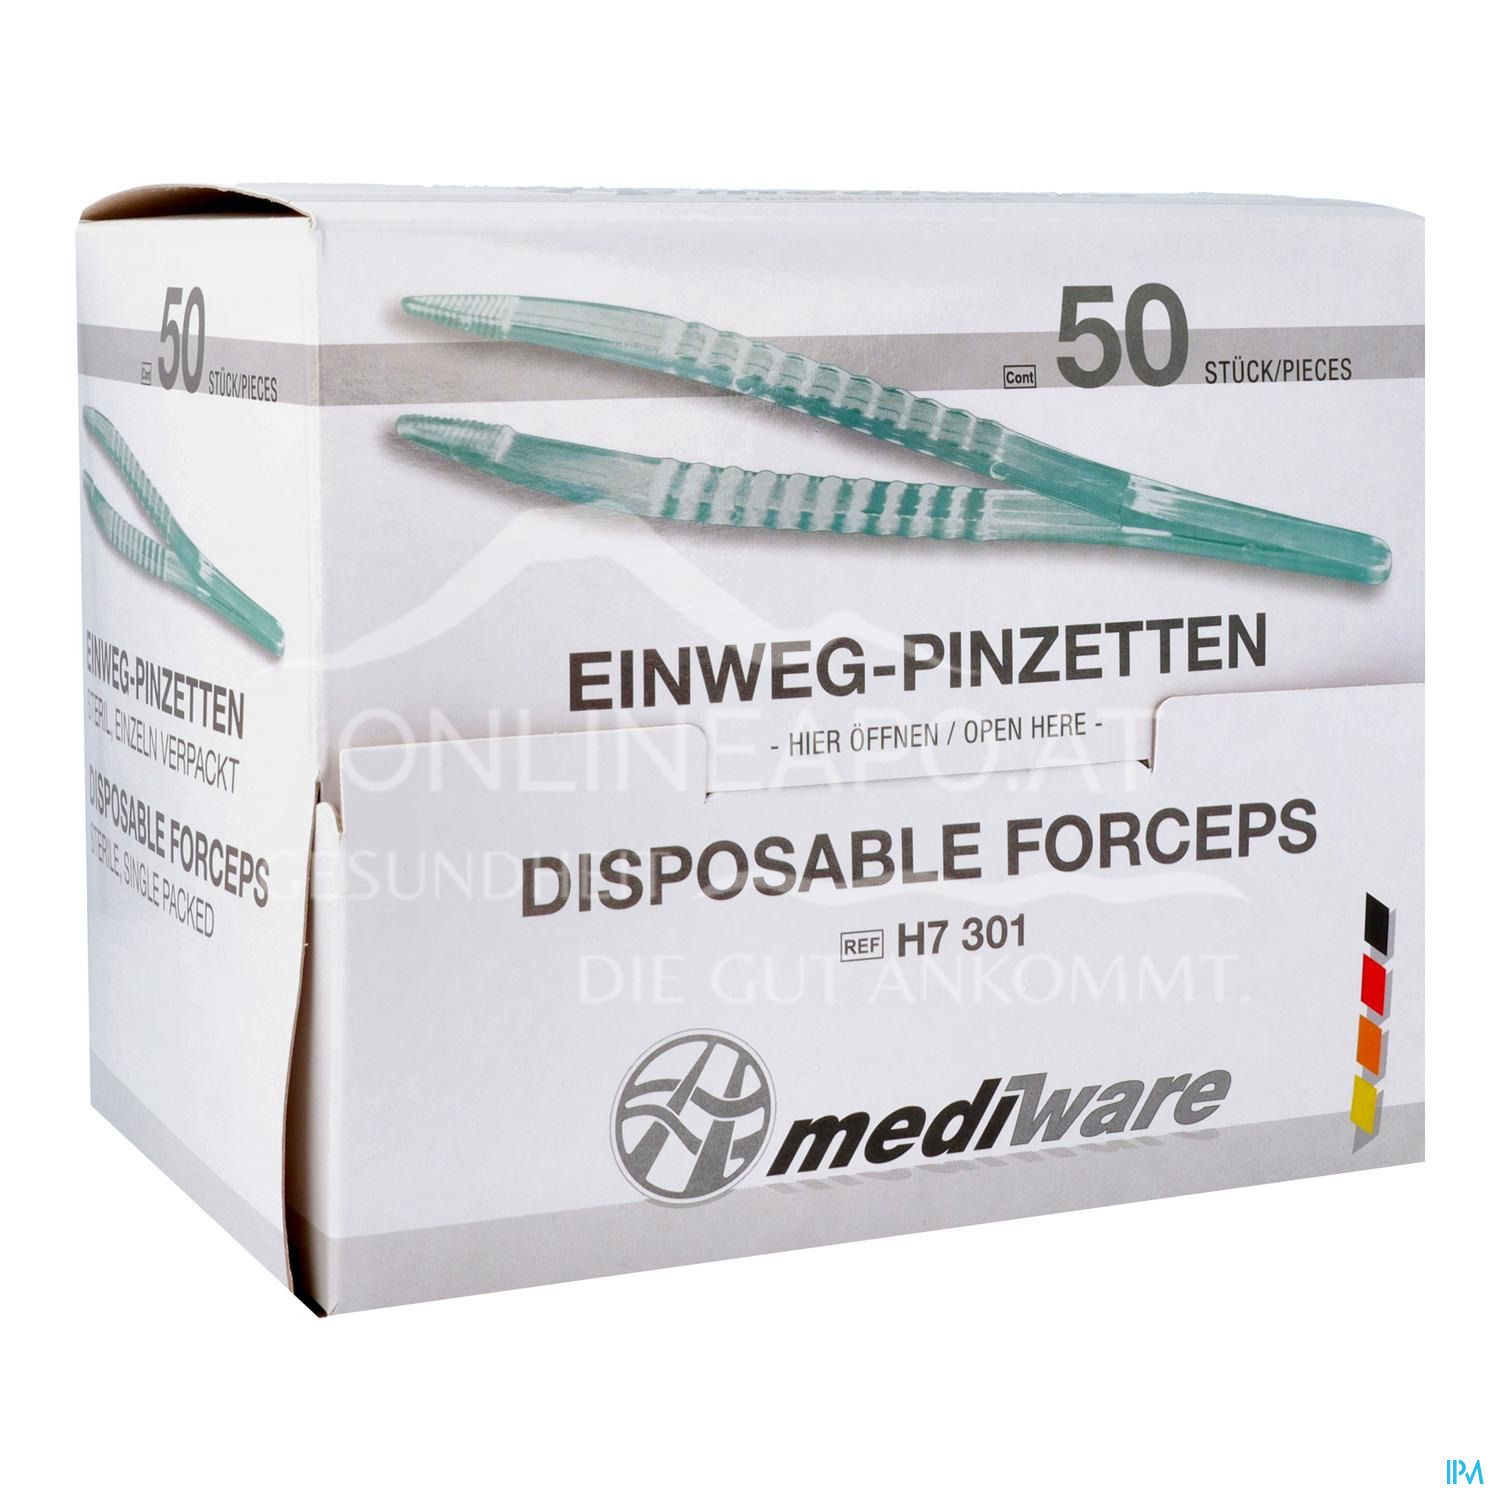 mediware Einweg-Pinzetten, steril